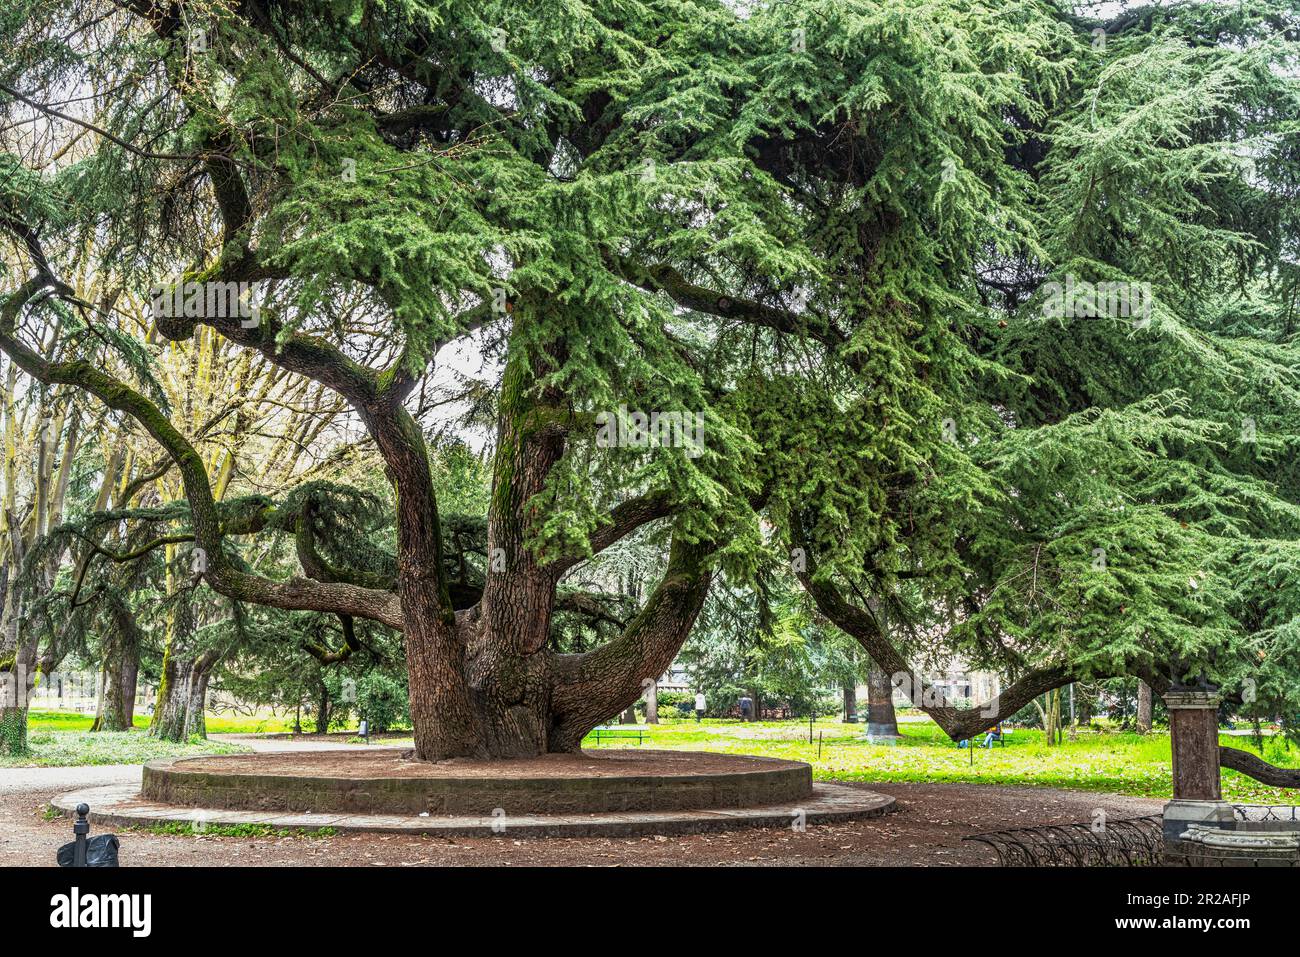 Cèdre du Liban, arbre monumental dans le parc du peuple, jardins publics de Reggio Emilia. Reggio Emilia, Emilie Romagne, Italie, Europe Banque D'Images